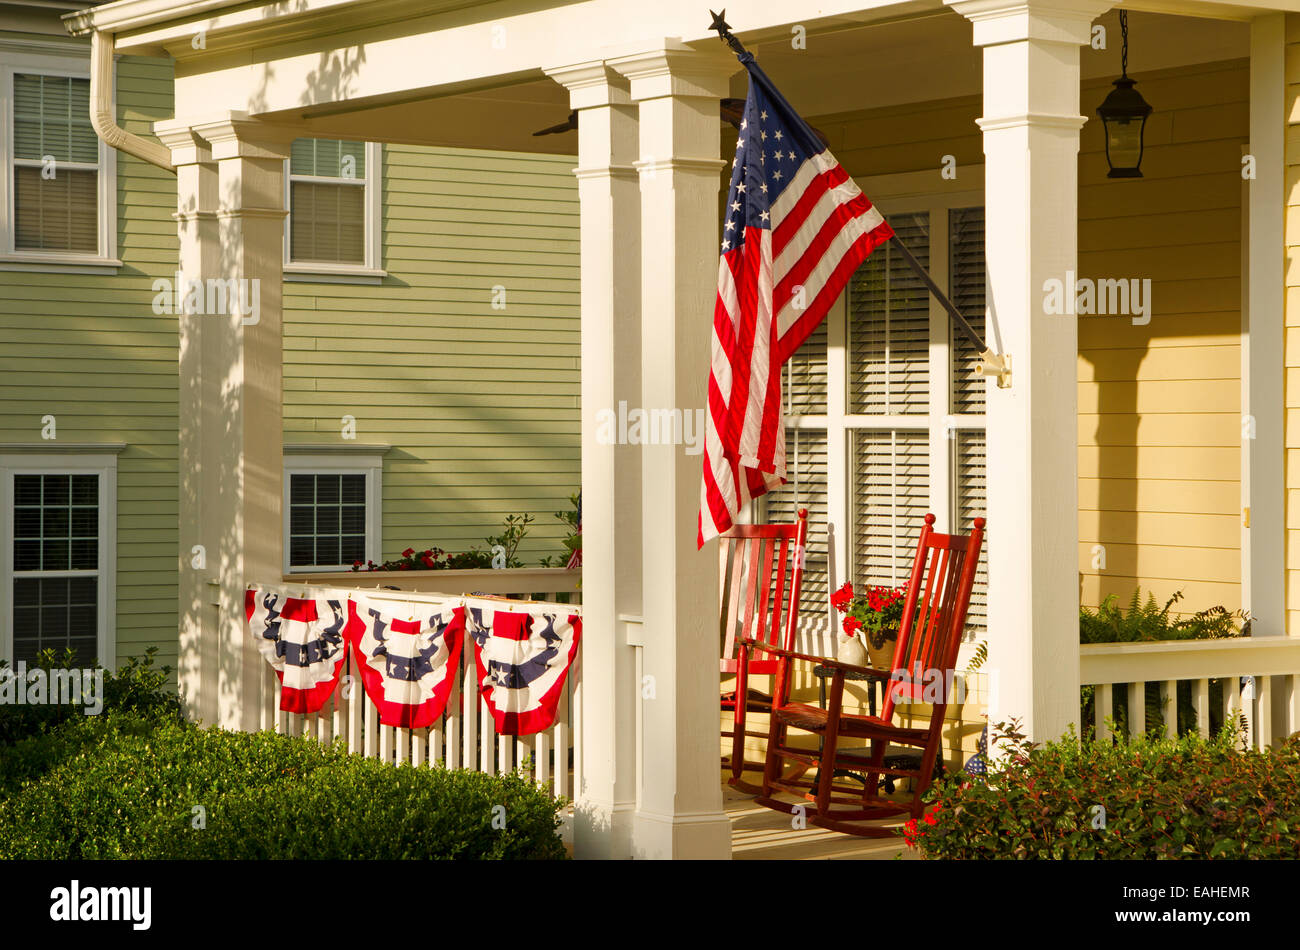 Eine amerikanische Flagge und Ammern hängen von einer Veranda ein gehobenes, viktorianischen Haus anlässlich des bevorstehenden Urlaub Stockfoto